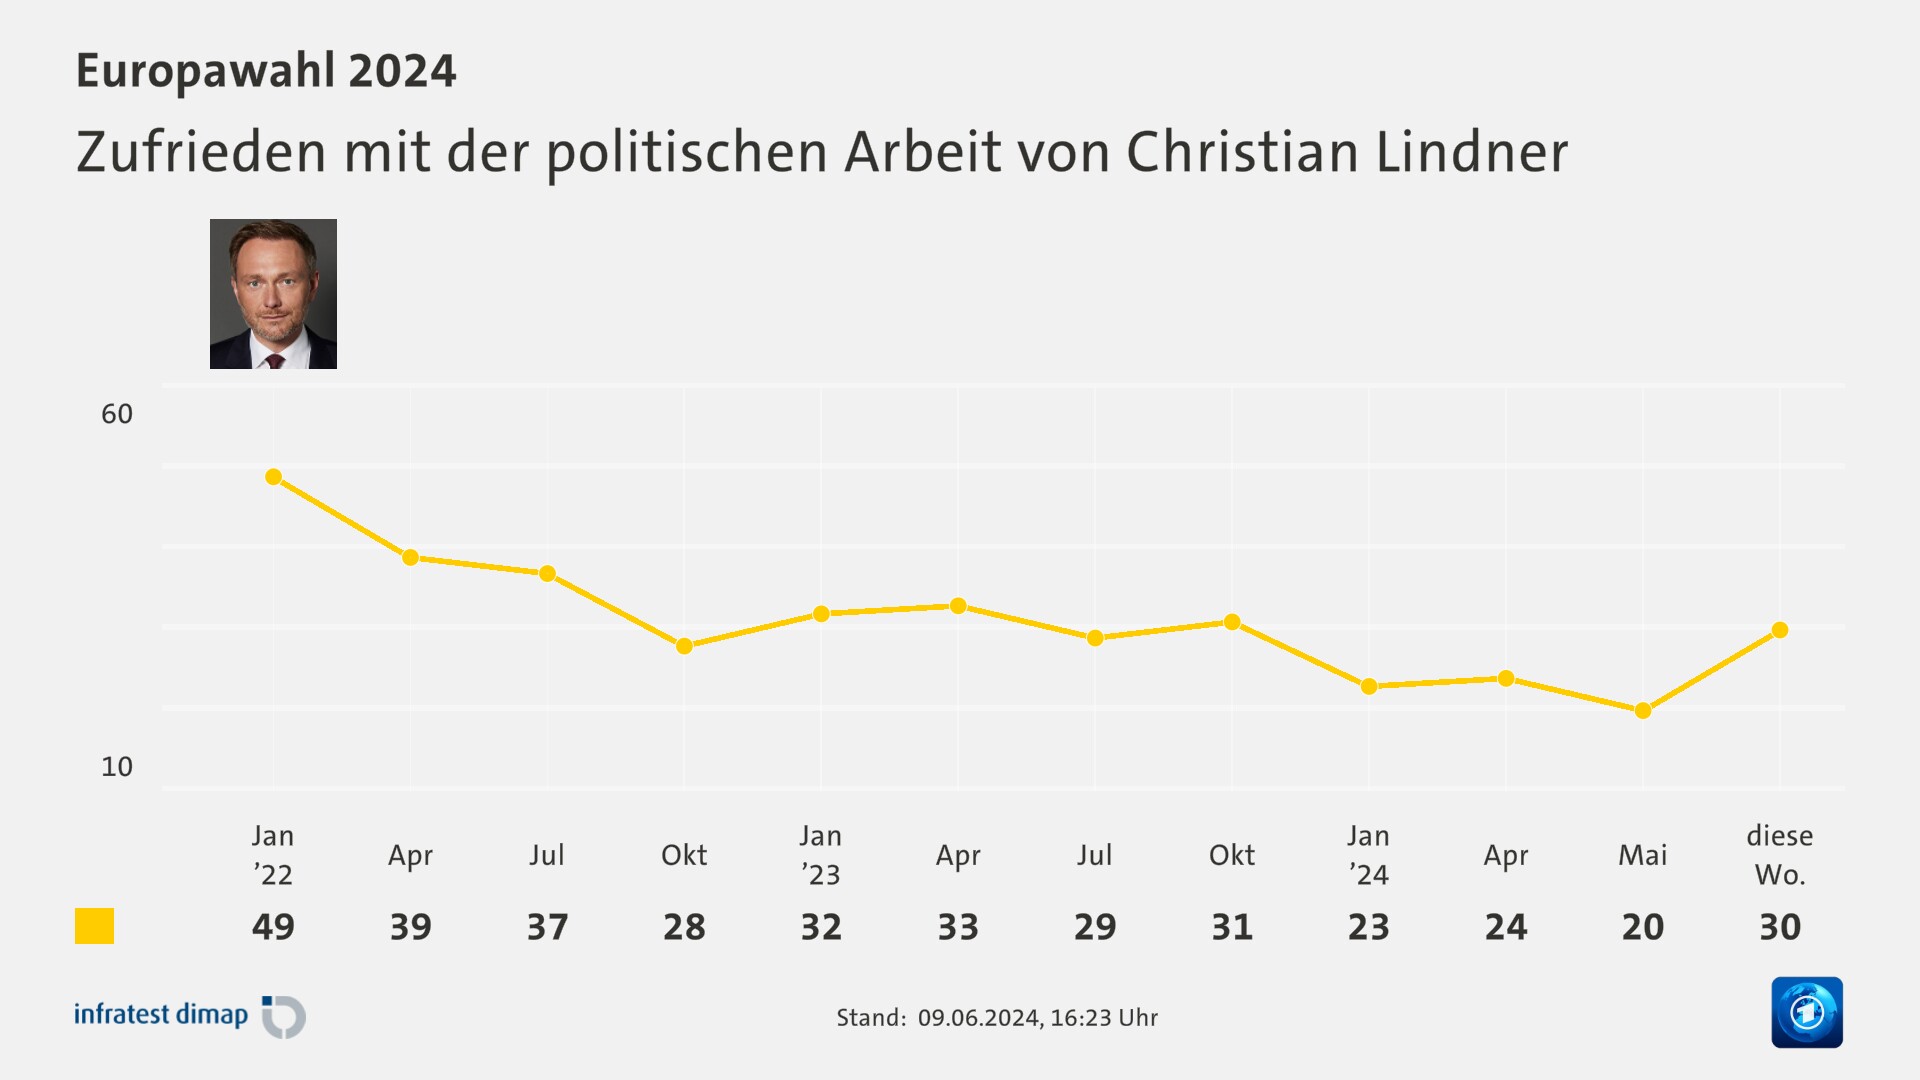 Zufrieden mit der politischen Arbeit von Christian Lindner